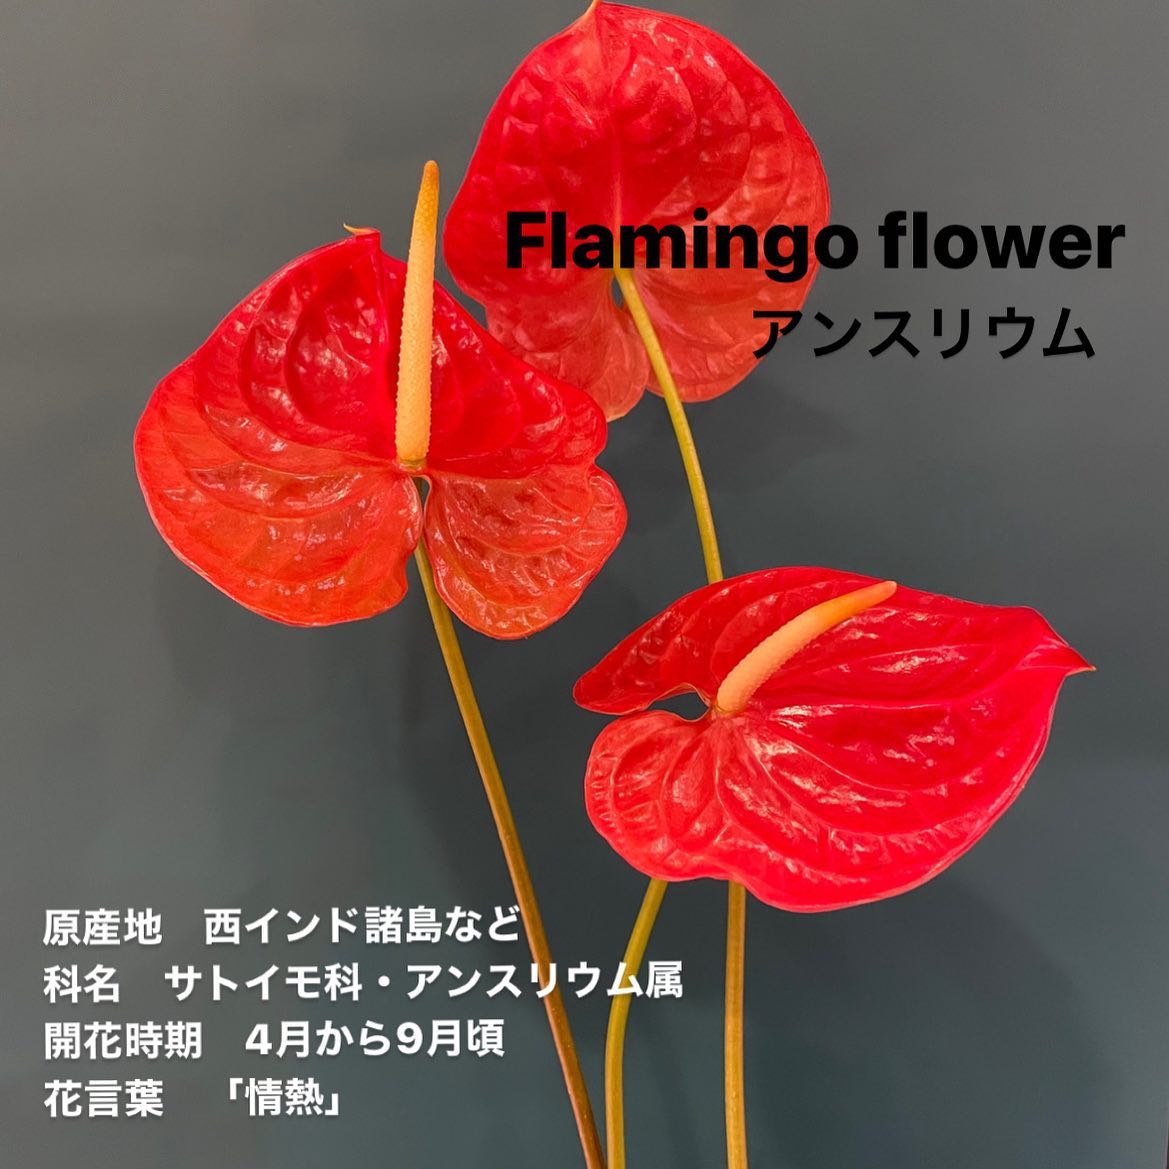 モンソーフルール新宿アルタ店です。
.

Flamingo flower
アンスリウム

原産地　西インド諸島など
科名　サトイモ科・アンスリウム属
開花時期　4月から9月頃
花言葉　「情熱」